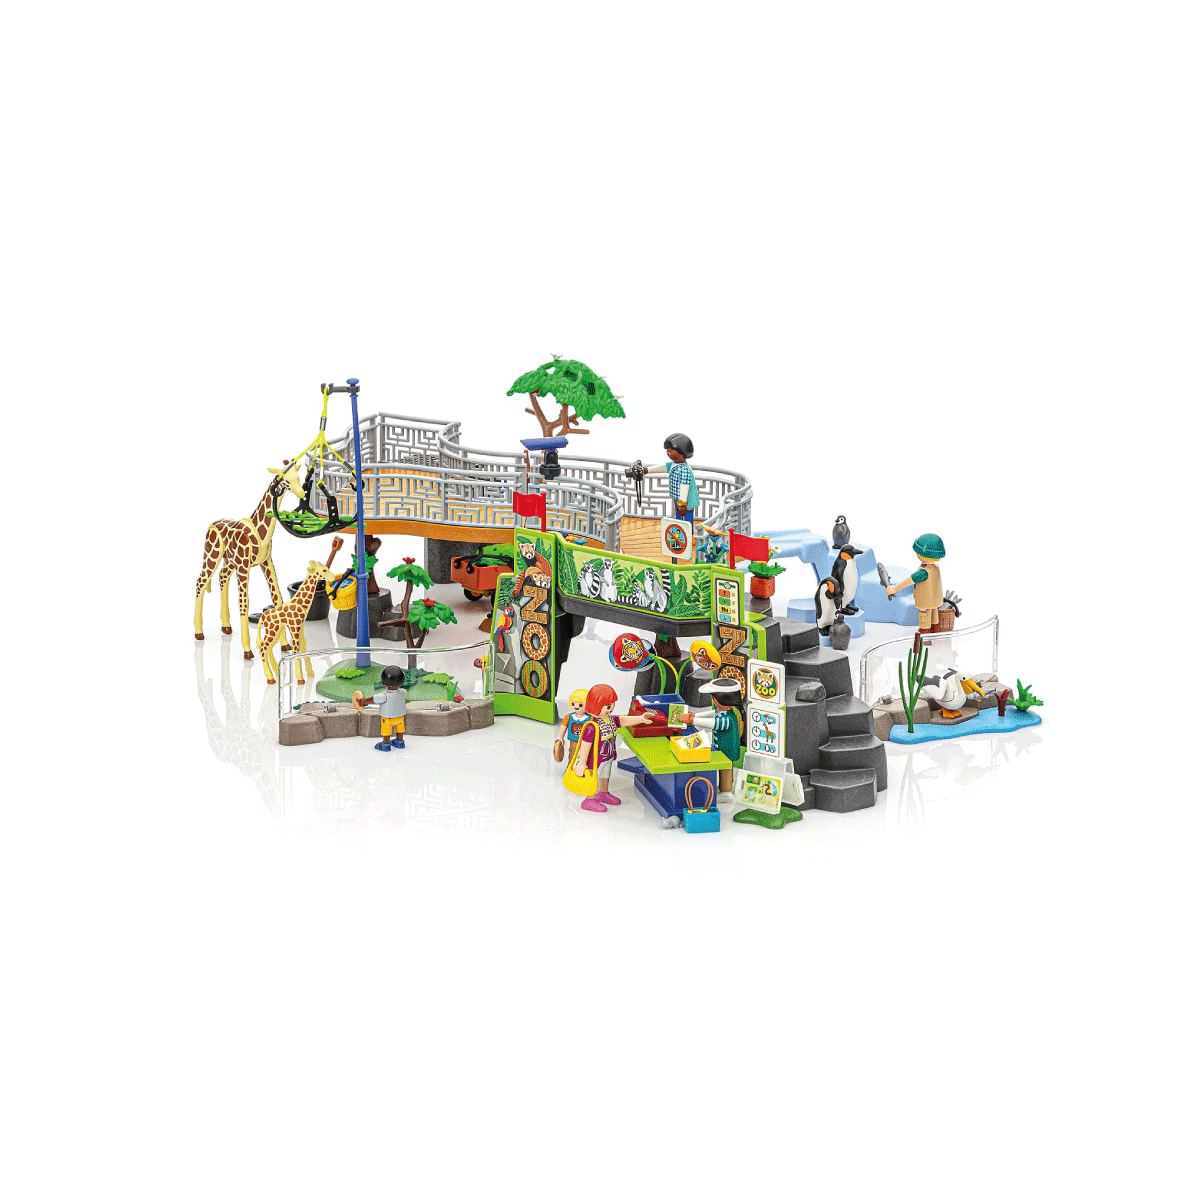 Gran Zoologico Playmobil de la Ciudad